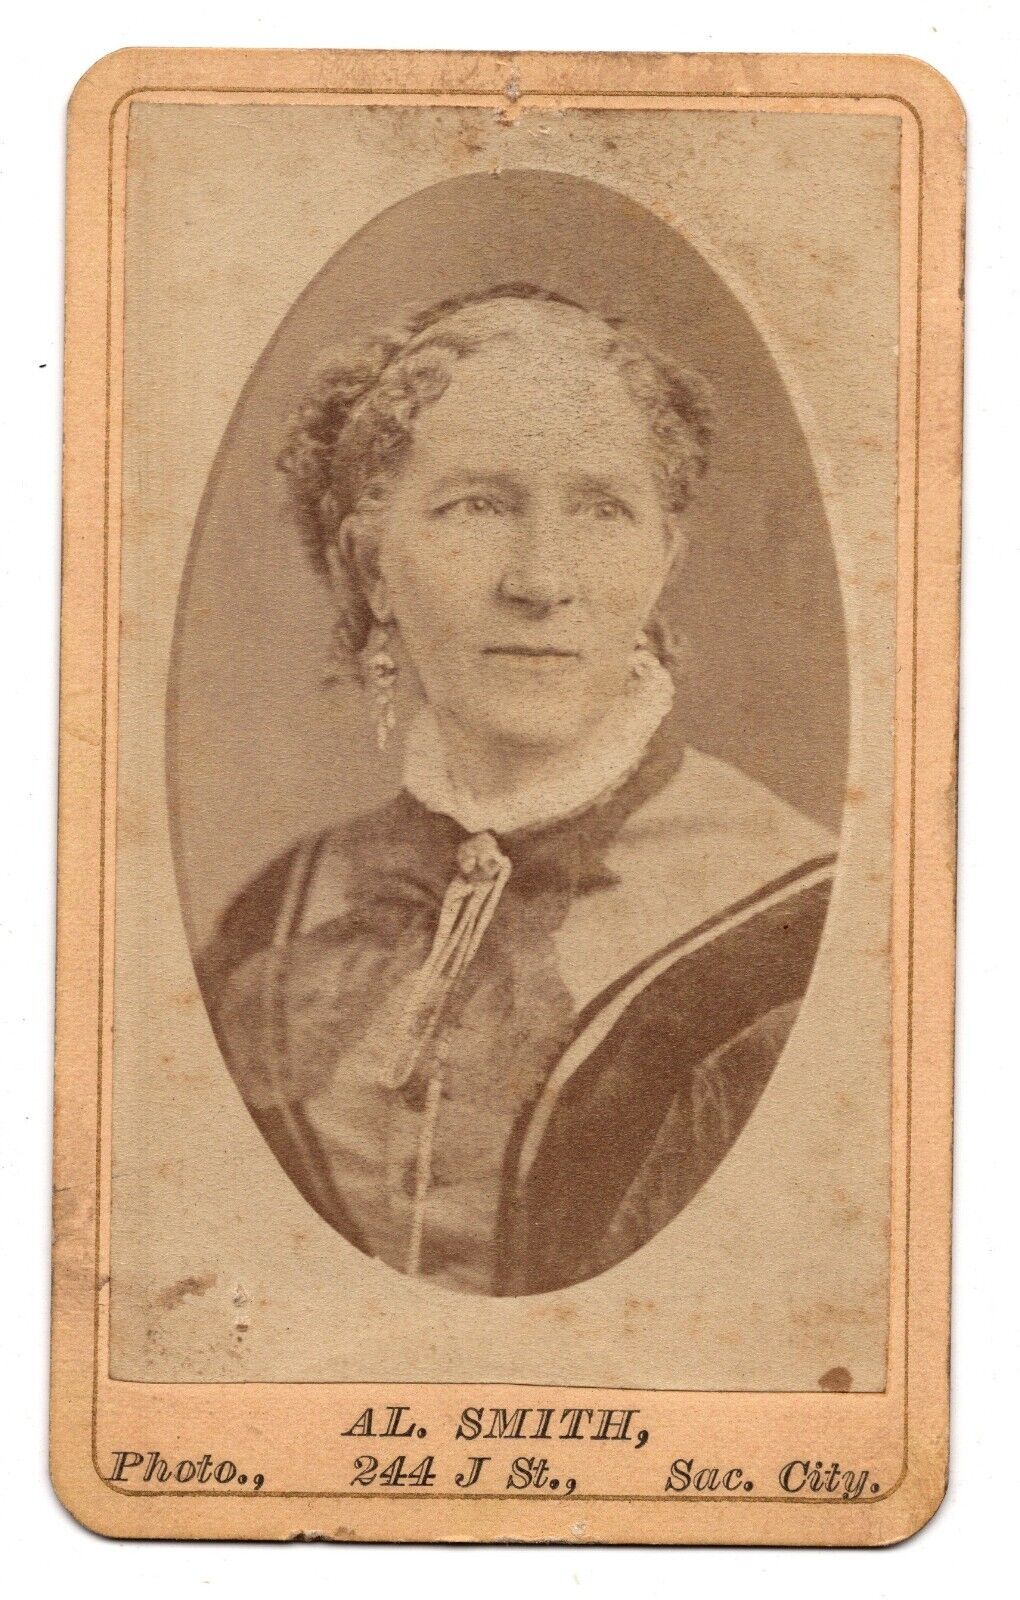 ANTIQUE CDV C. 1870s AL. SMITH ODLER LADY IN FANCY DRESS SACREMENTO CALIFORNIA